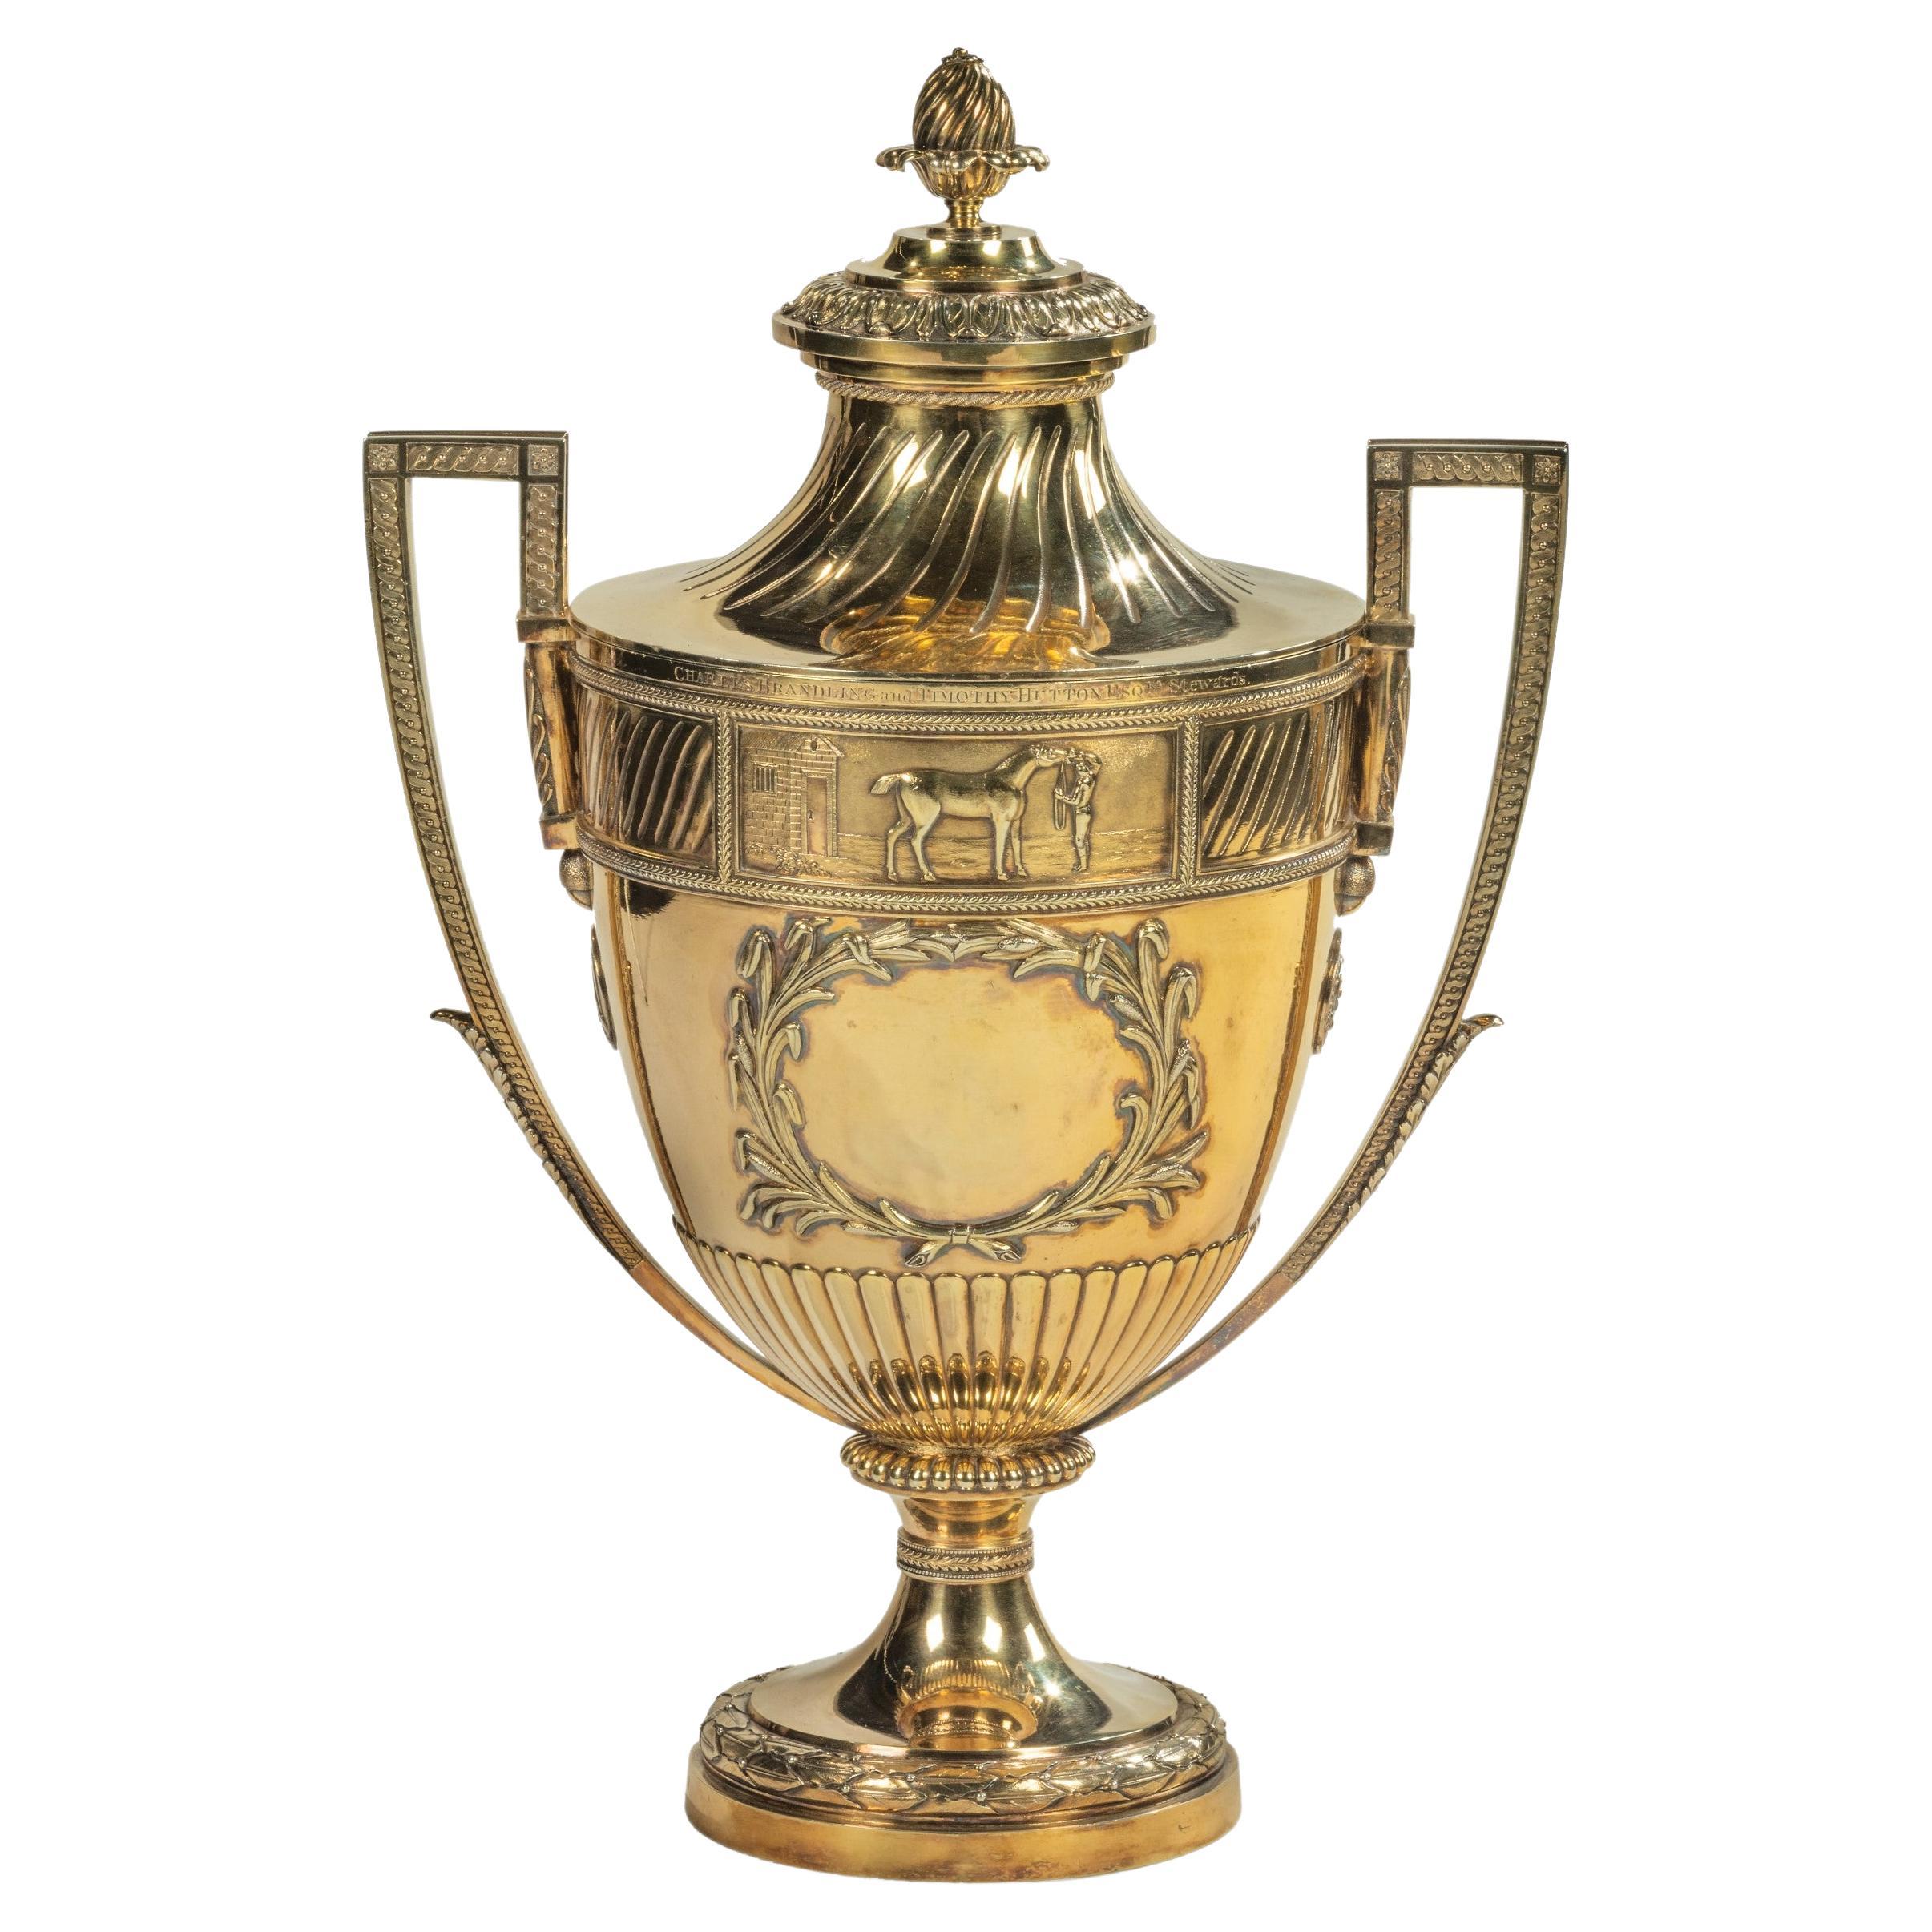 1802, Richmond “Gold Cup”, by Robert Adam, Paul Storr and Robert Makepeace